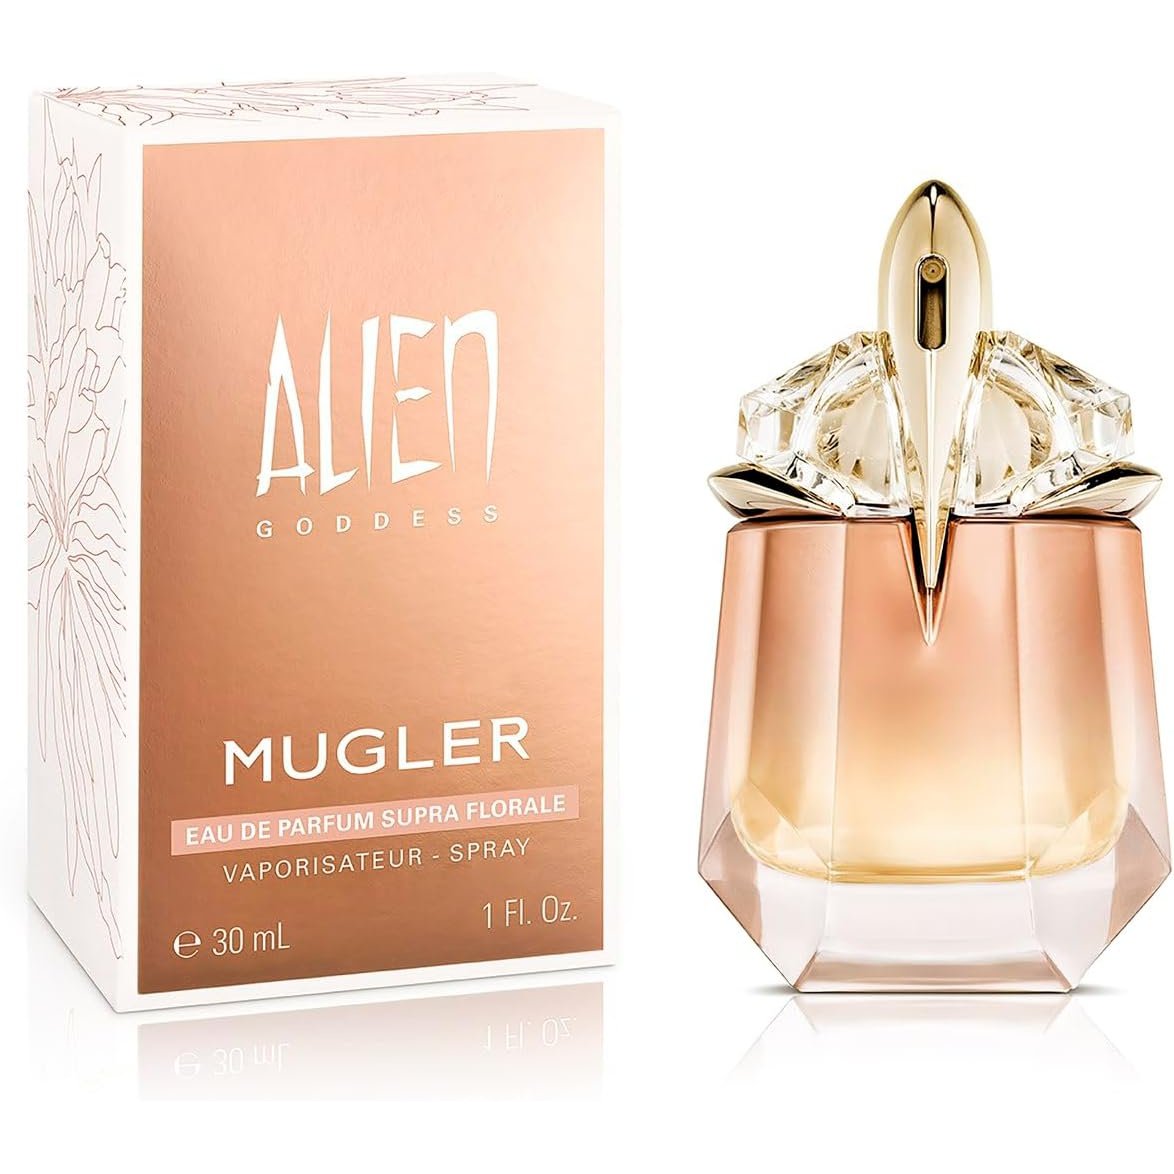 Mugler Alien Goddess Supra Florale Eau de Parfum 30ml Spray